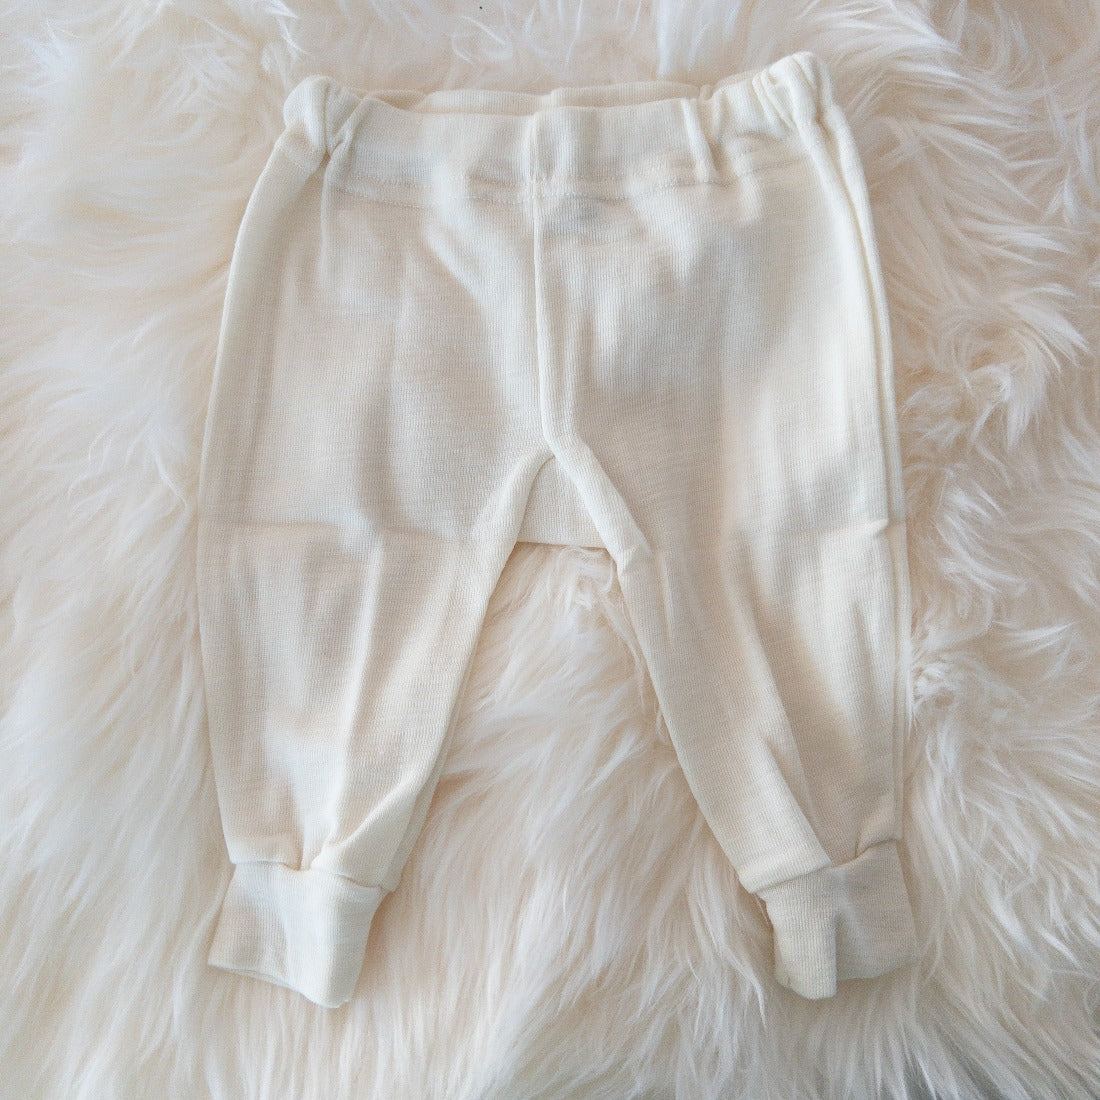 HOCOSA Organic Merino Wool Baby Pants – Danish Woolen Delight